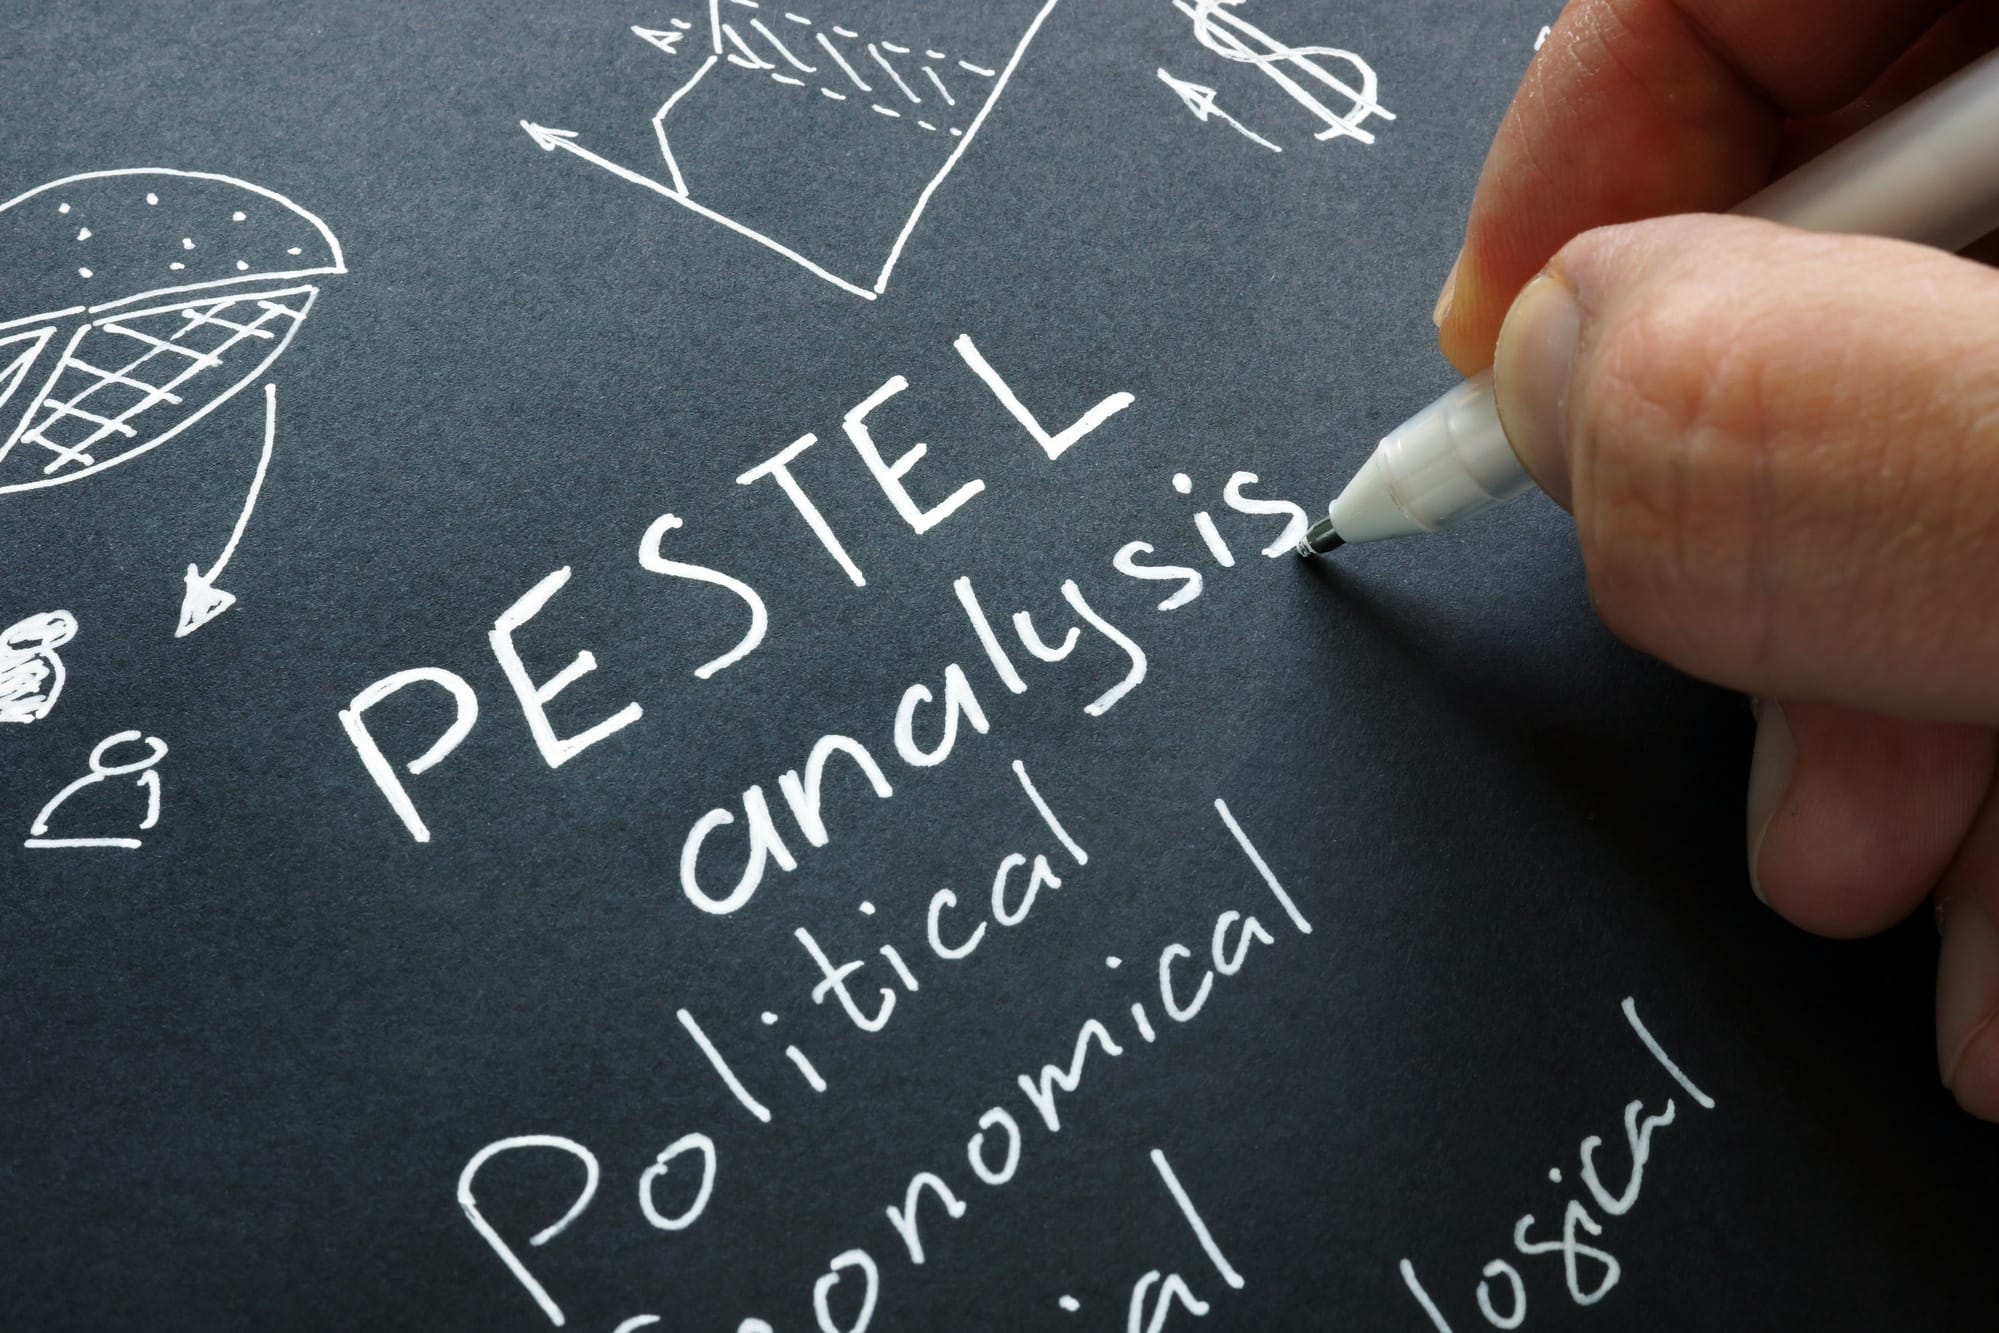 environmental-scanning-pestle-analysis